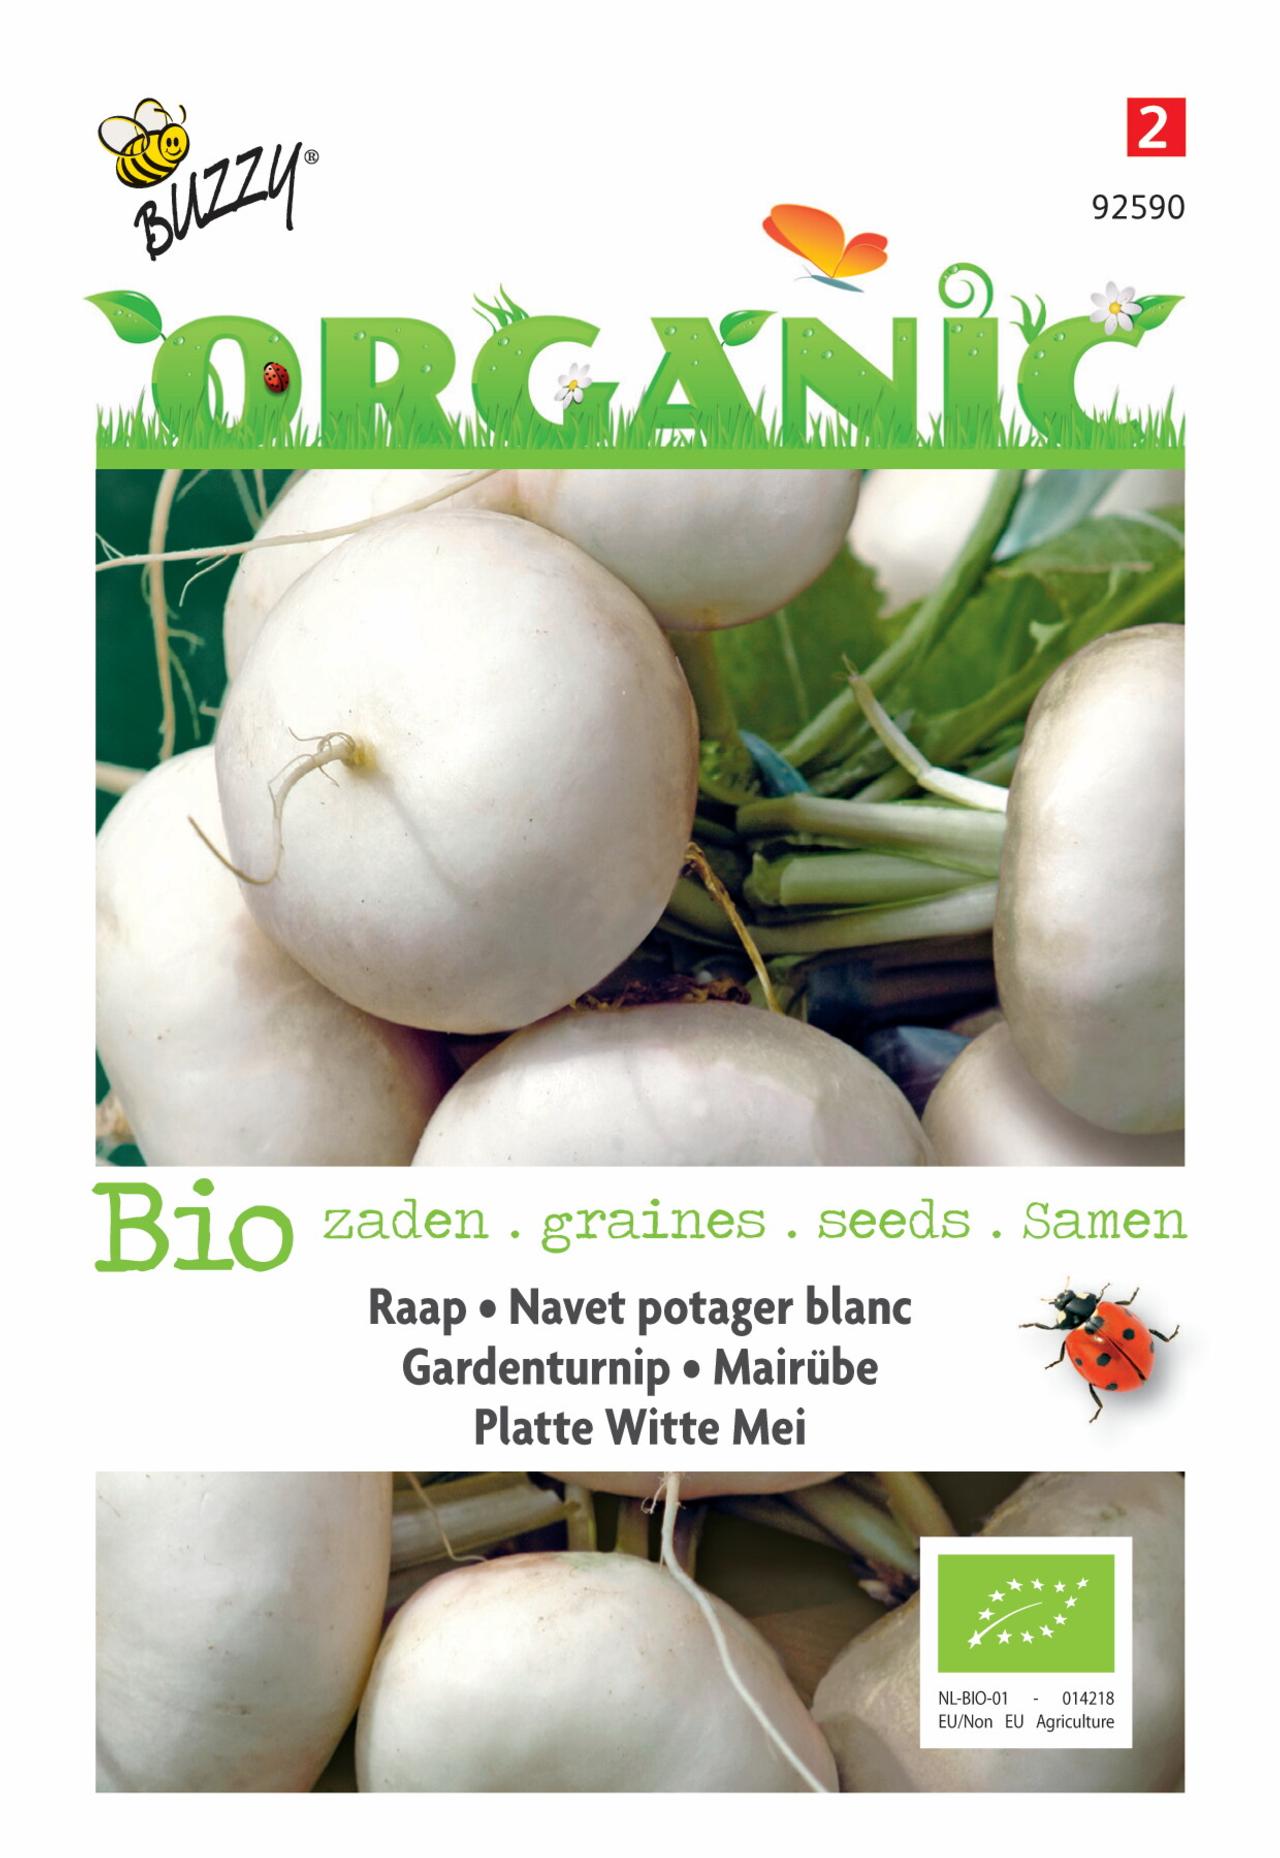 Brassica rapa var. rapa ' Platte Witte Mei' (BIO) plant